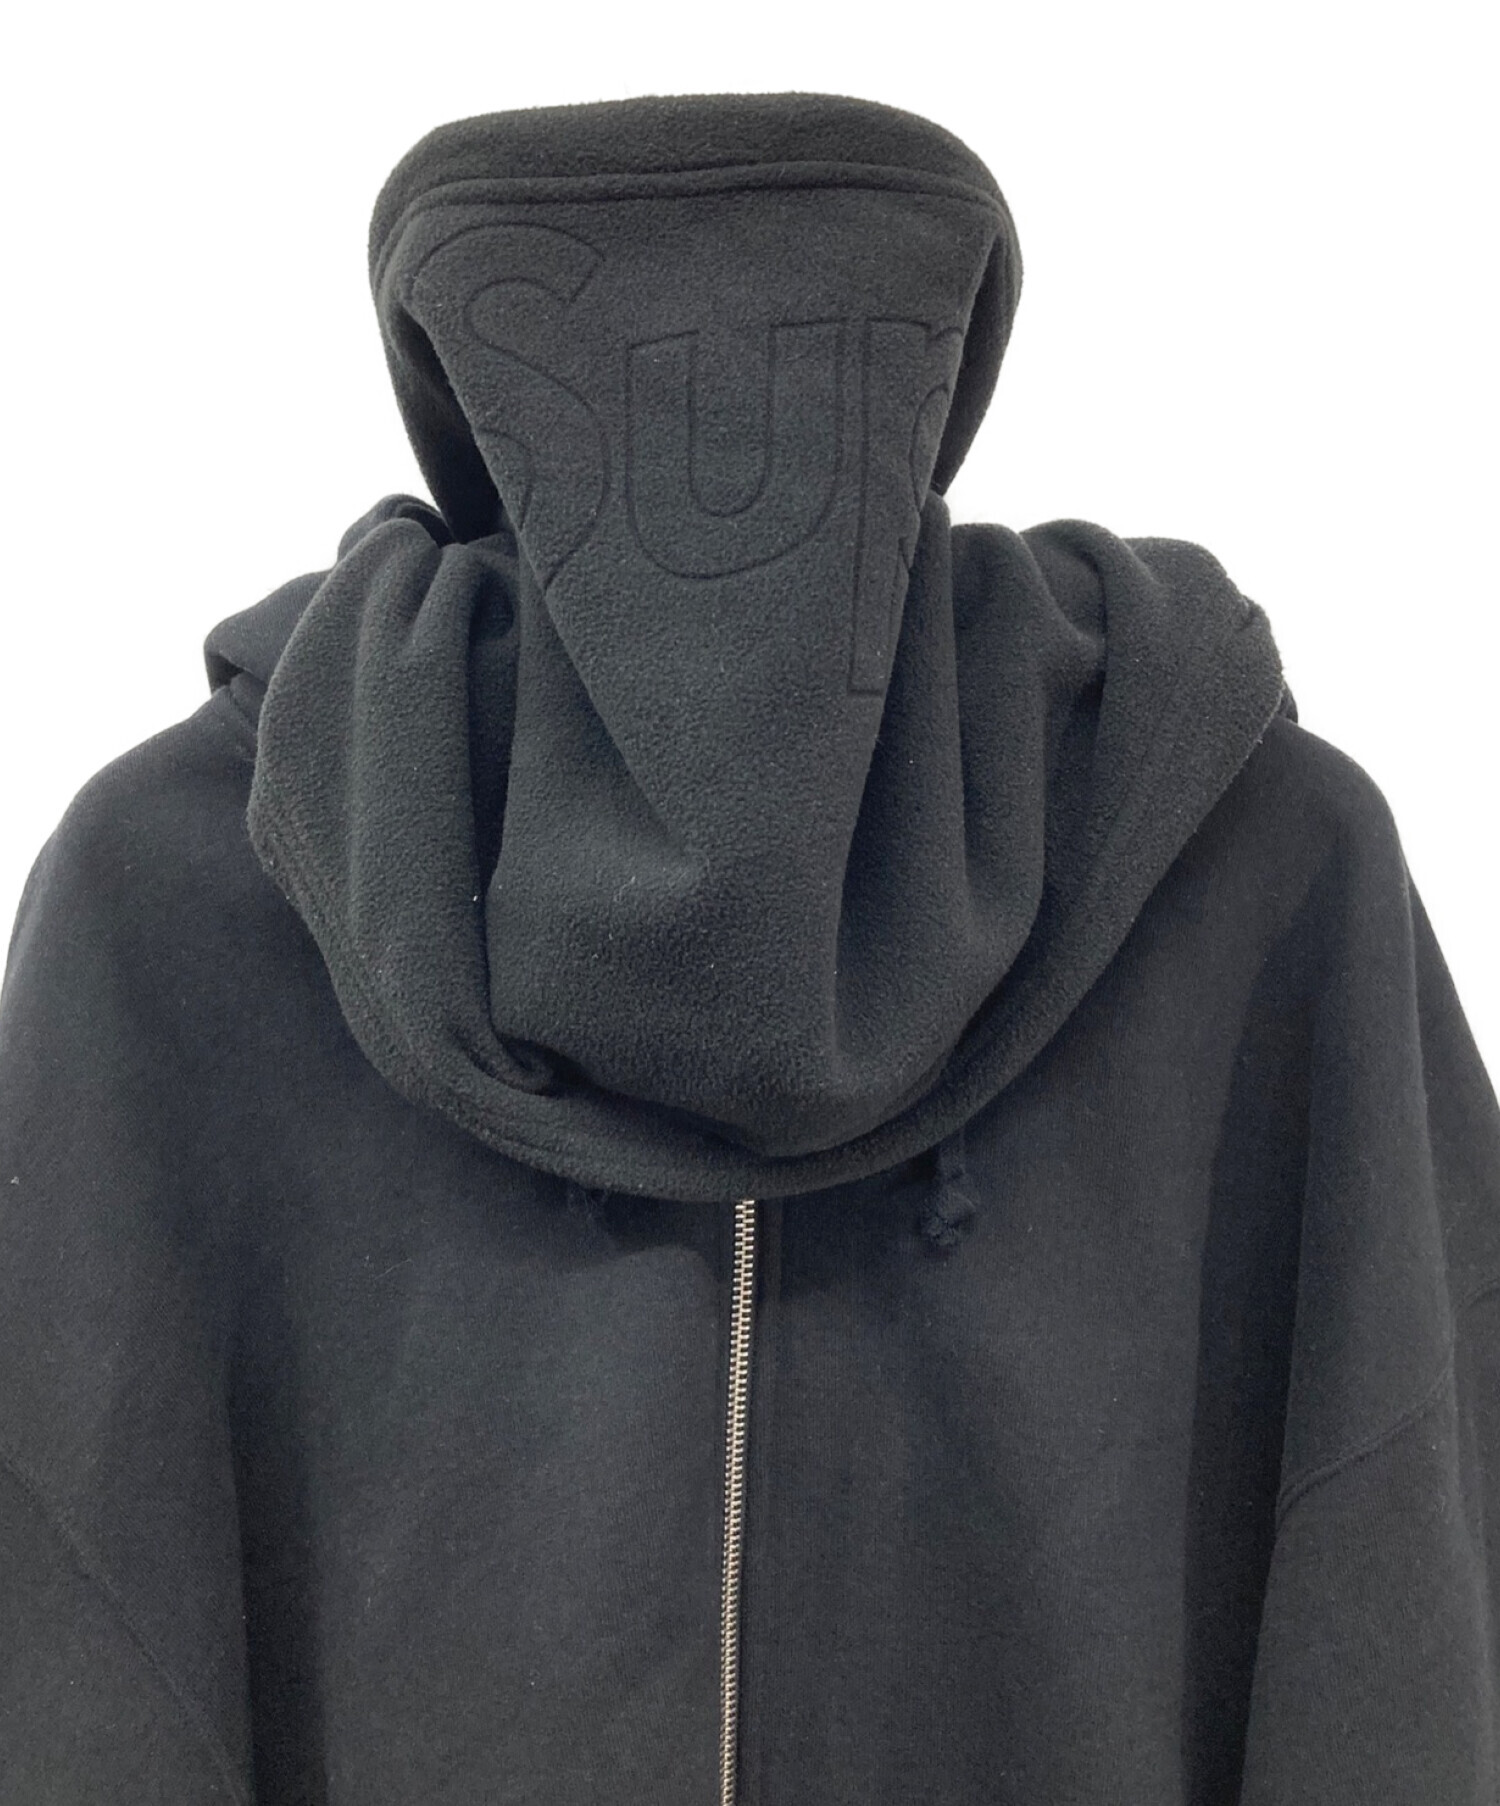 Supreme (シュプリーム) Double Hood Facemask Zip Up Hooded Sweatshirt/22AW  フェイスマスク付き ダブルフード ジップ スウェットパーカー ブラック サイズ:XL